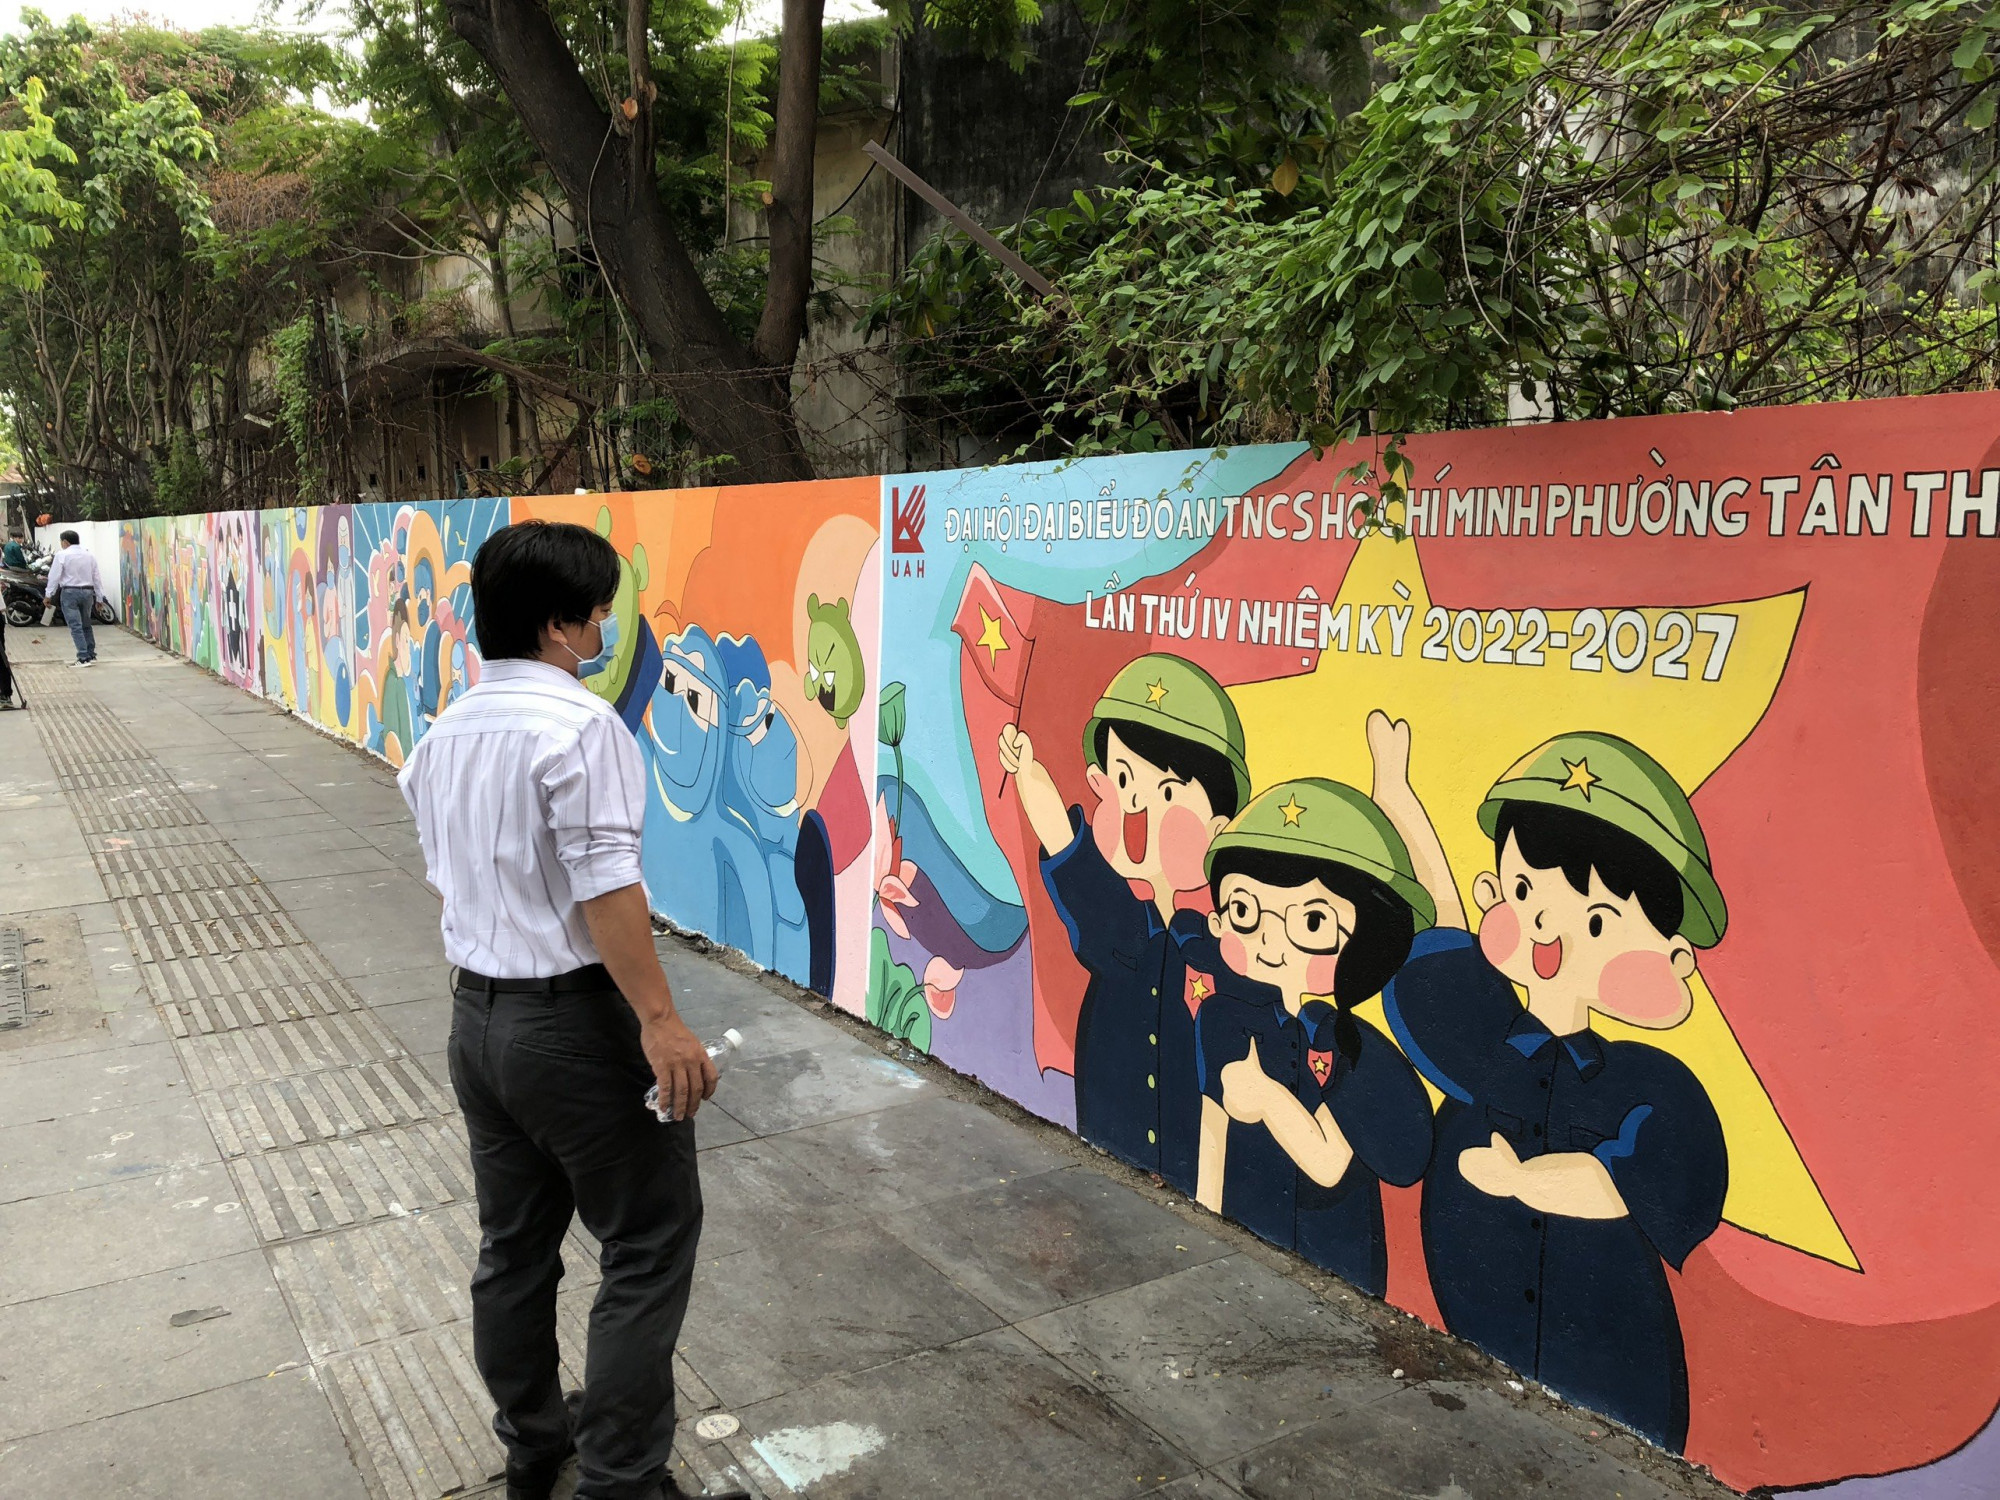 Bức tường cũ của một doanh nghiệp dọc tuyến đường Lũy Bán Bích vừa được các sinh viên kiến trúc và người dân phường Tân Thành, Q.Tân Phú (TPHCM) biến thành các tác phẩm nghệ thuật. Ảnh: Quốc Ngọc